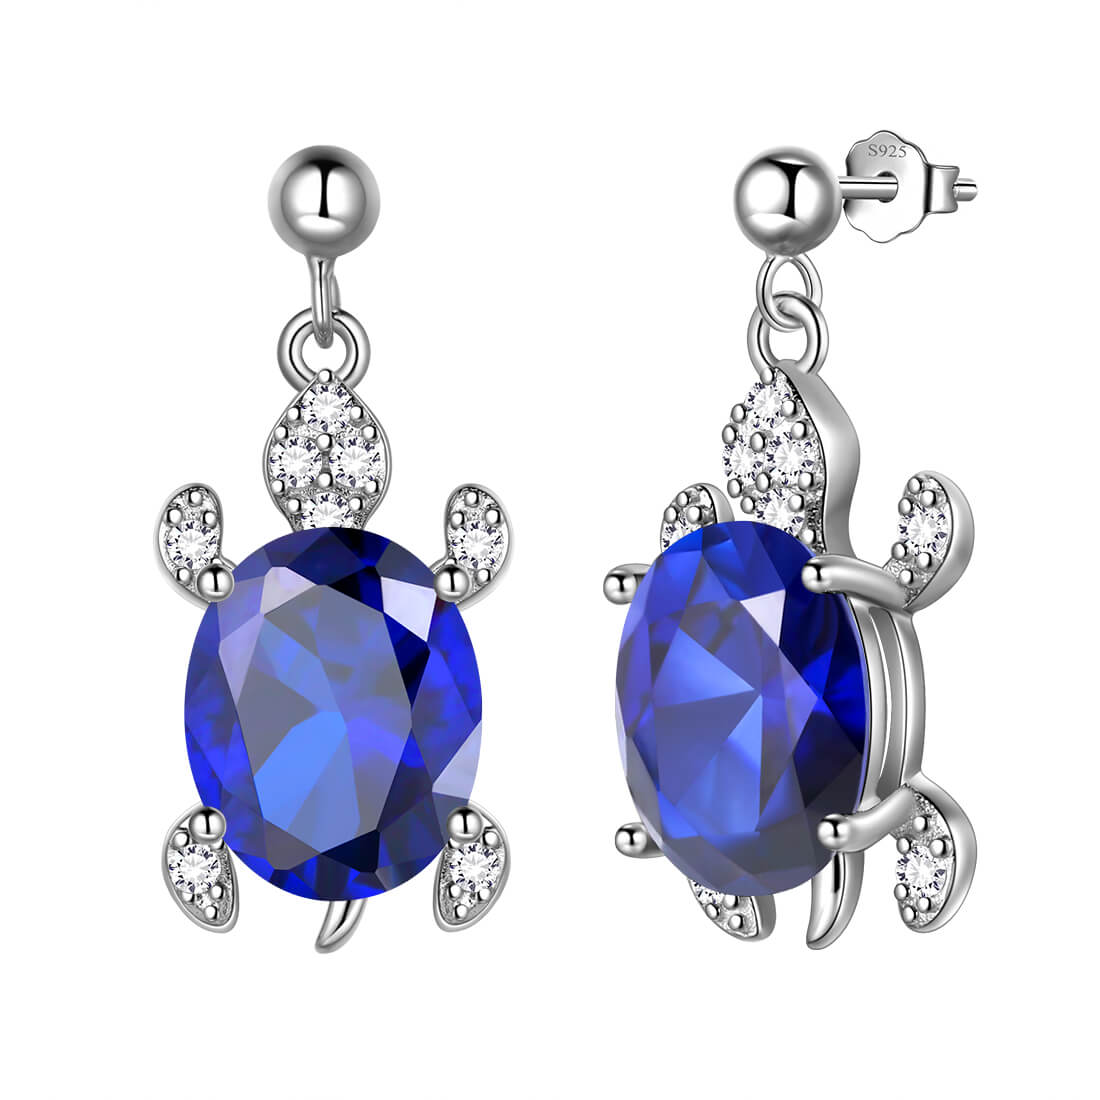 Women Turtle Drop Earrings Sterling Silver - Earrings - Aurora Tears Jewelry